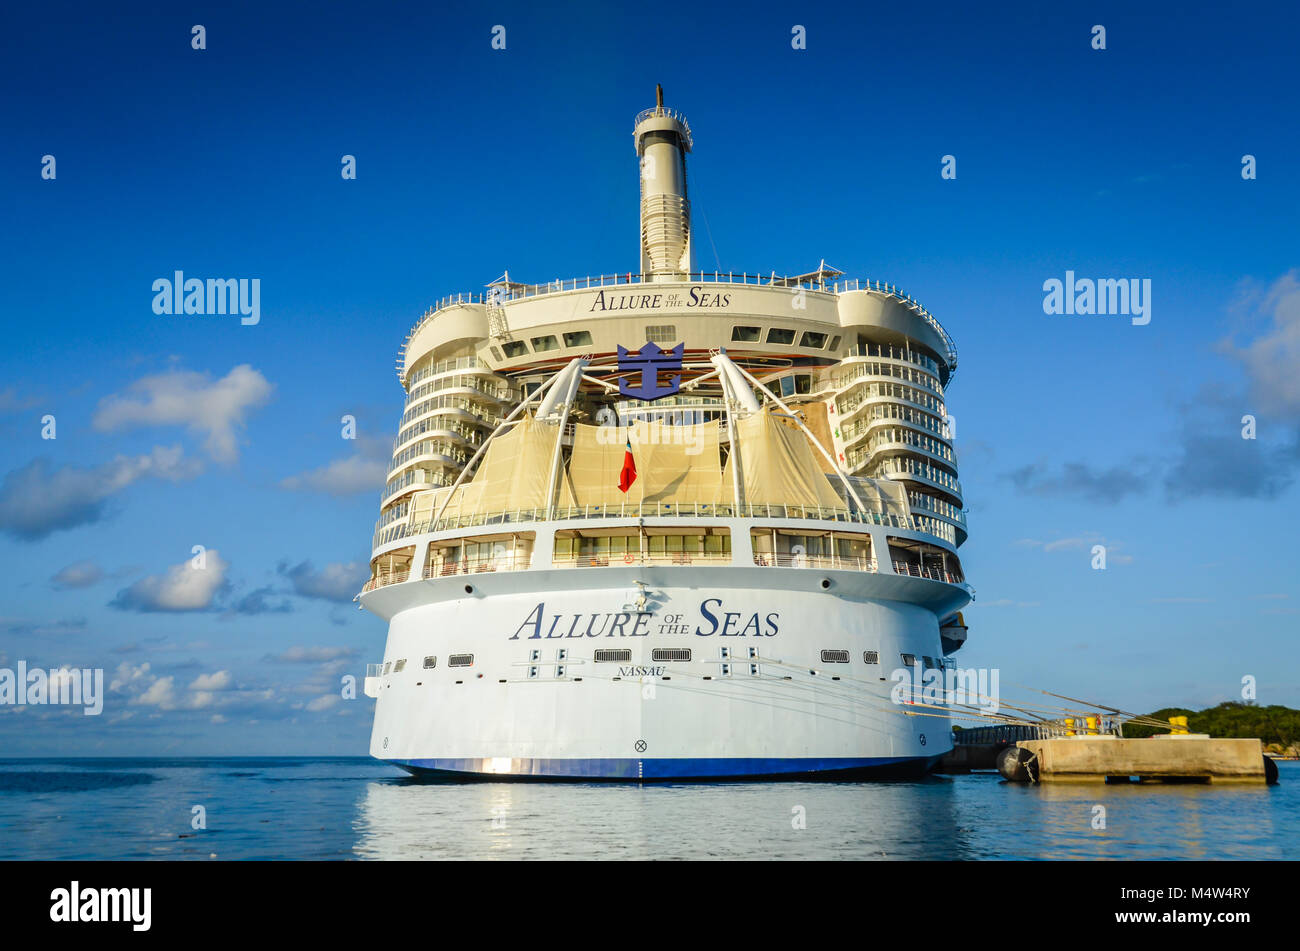 Allure of the Seas, l'un des plus gros navires de croisière dans le monde et une partie de la flotte de Royal Caribbean, accosté à Seas, Haïti. Banque D'Images